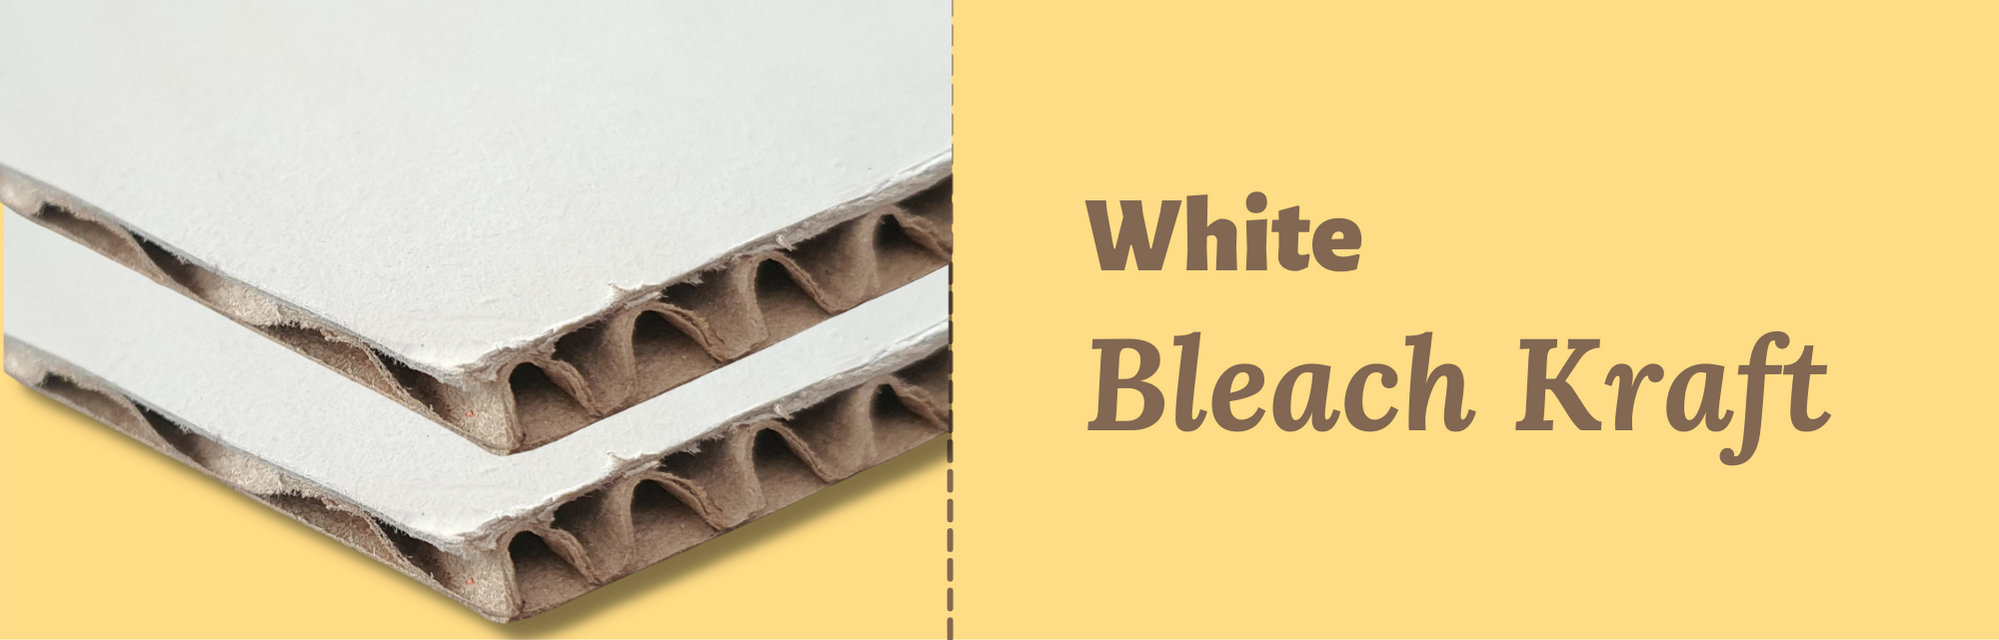 White Bleach Kraft